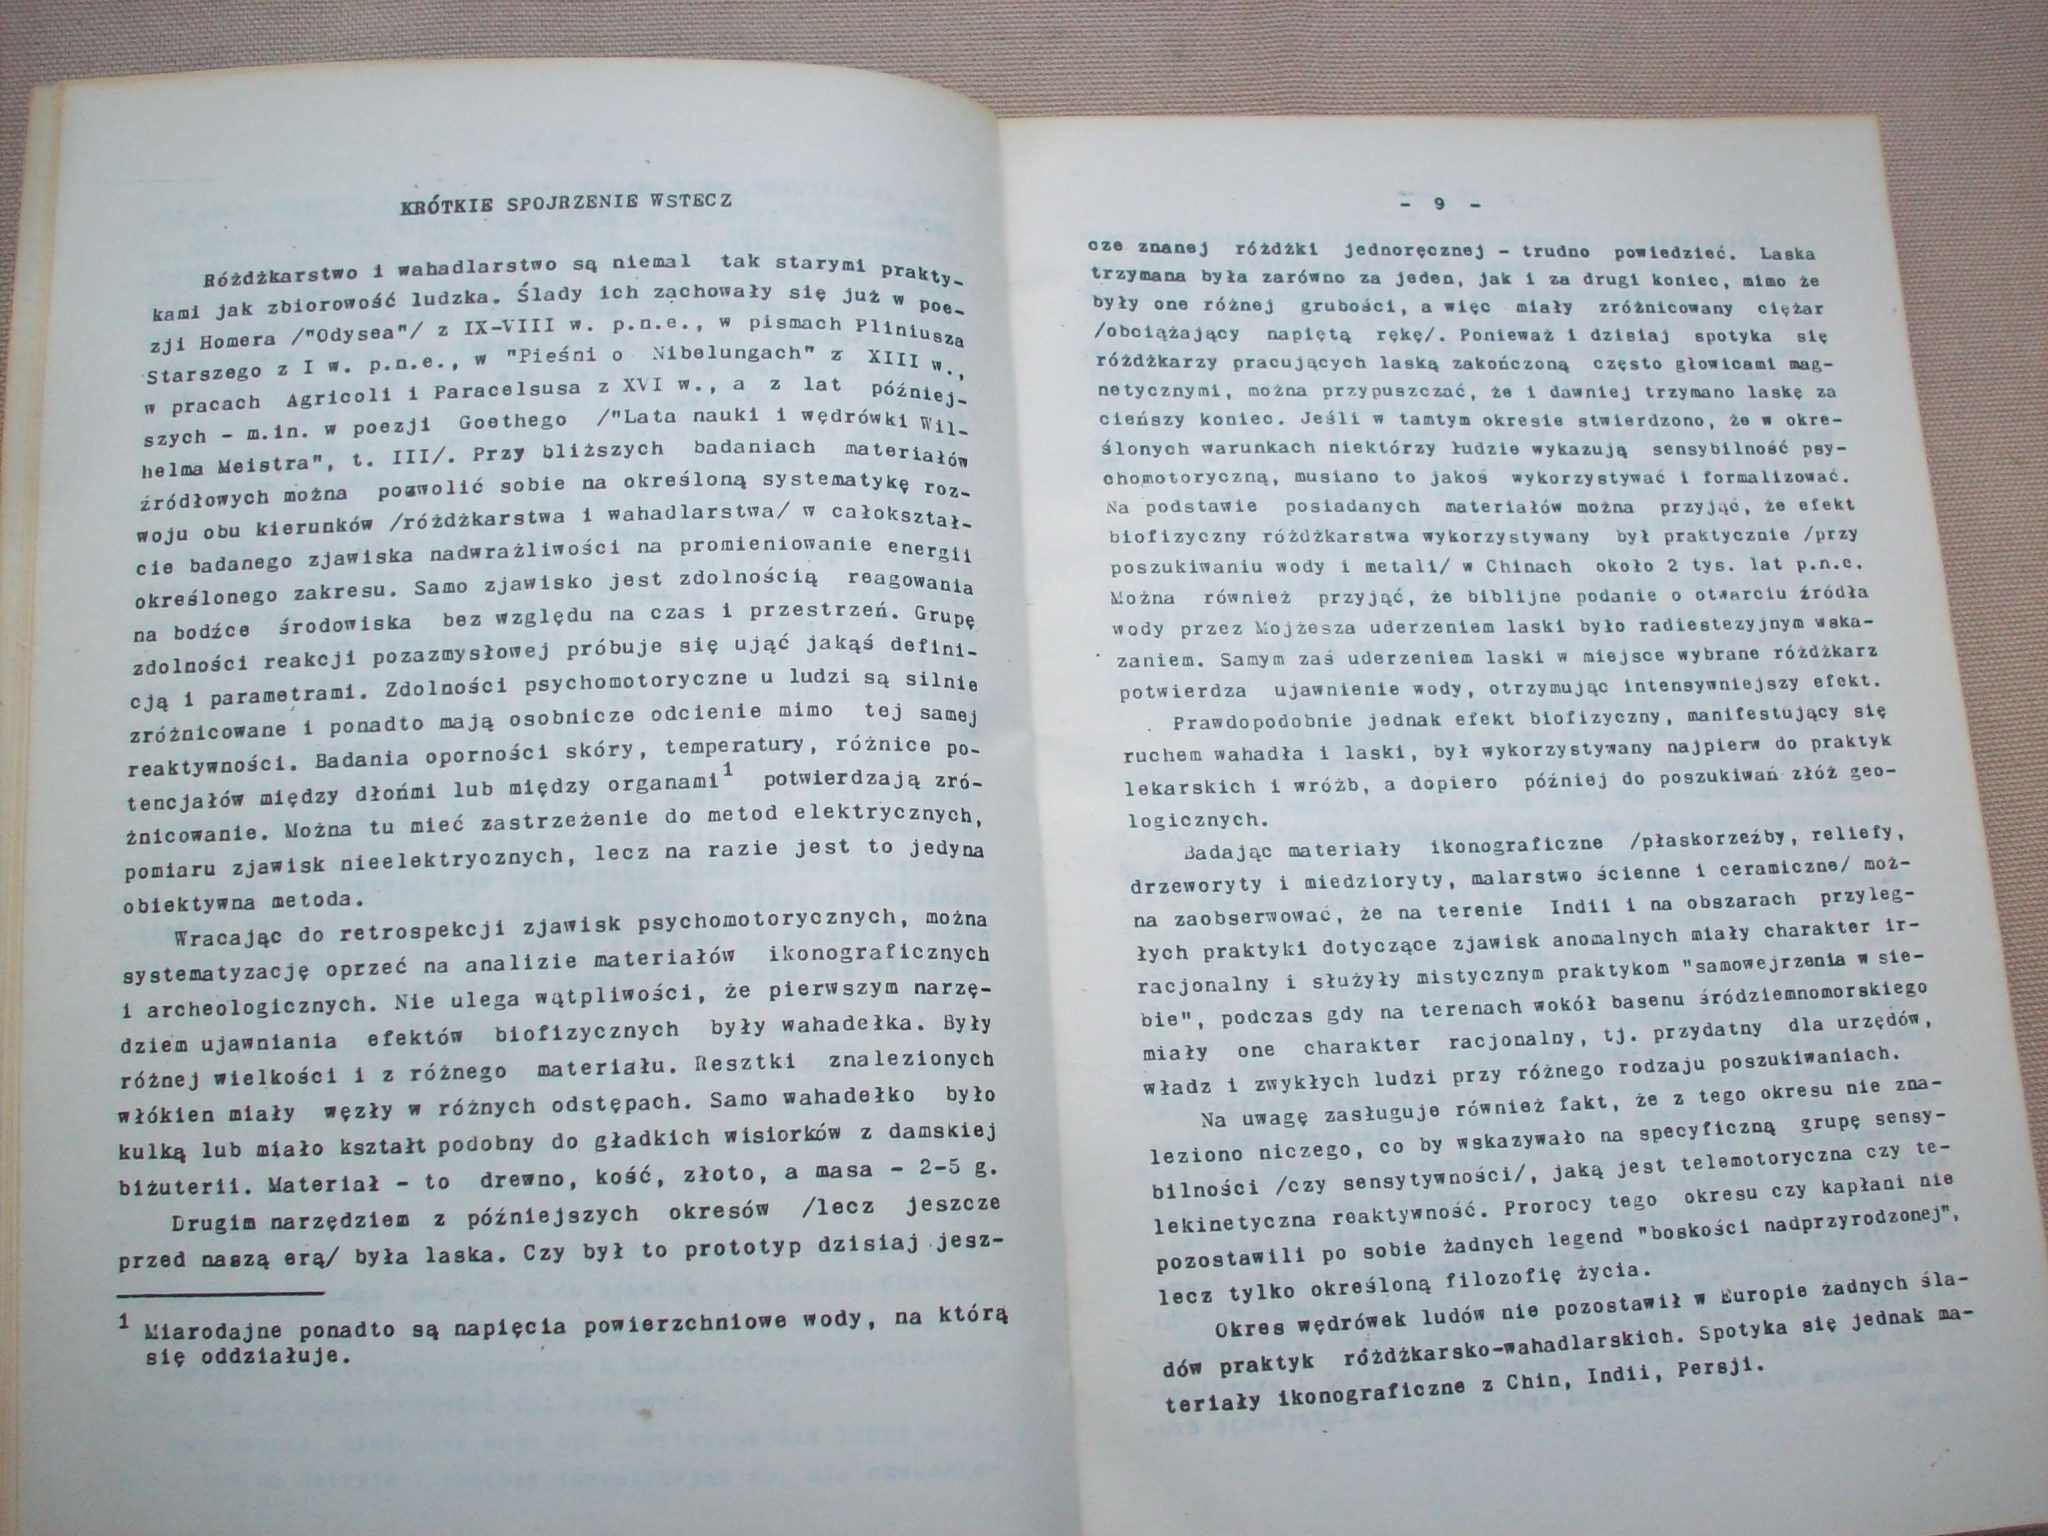 Strefy nad ciekami wód wgłębnych, L.J.Radwanowski, 1988.